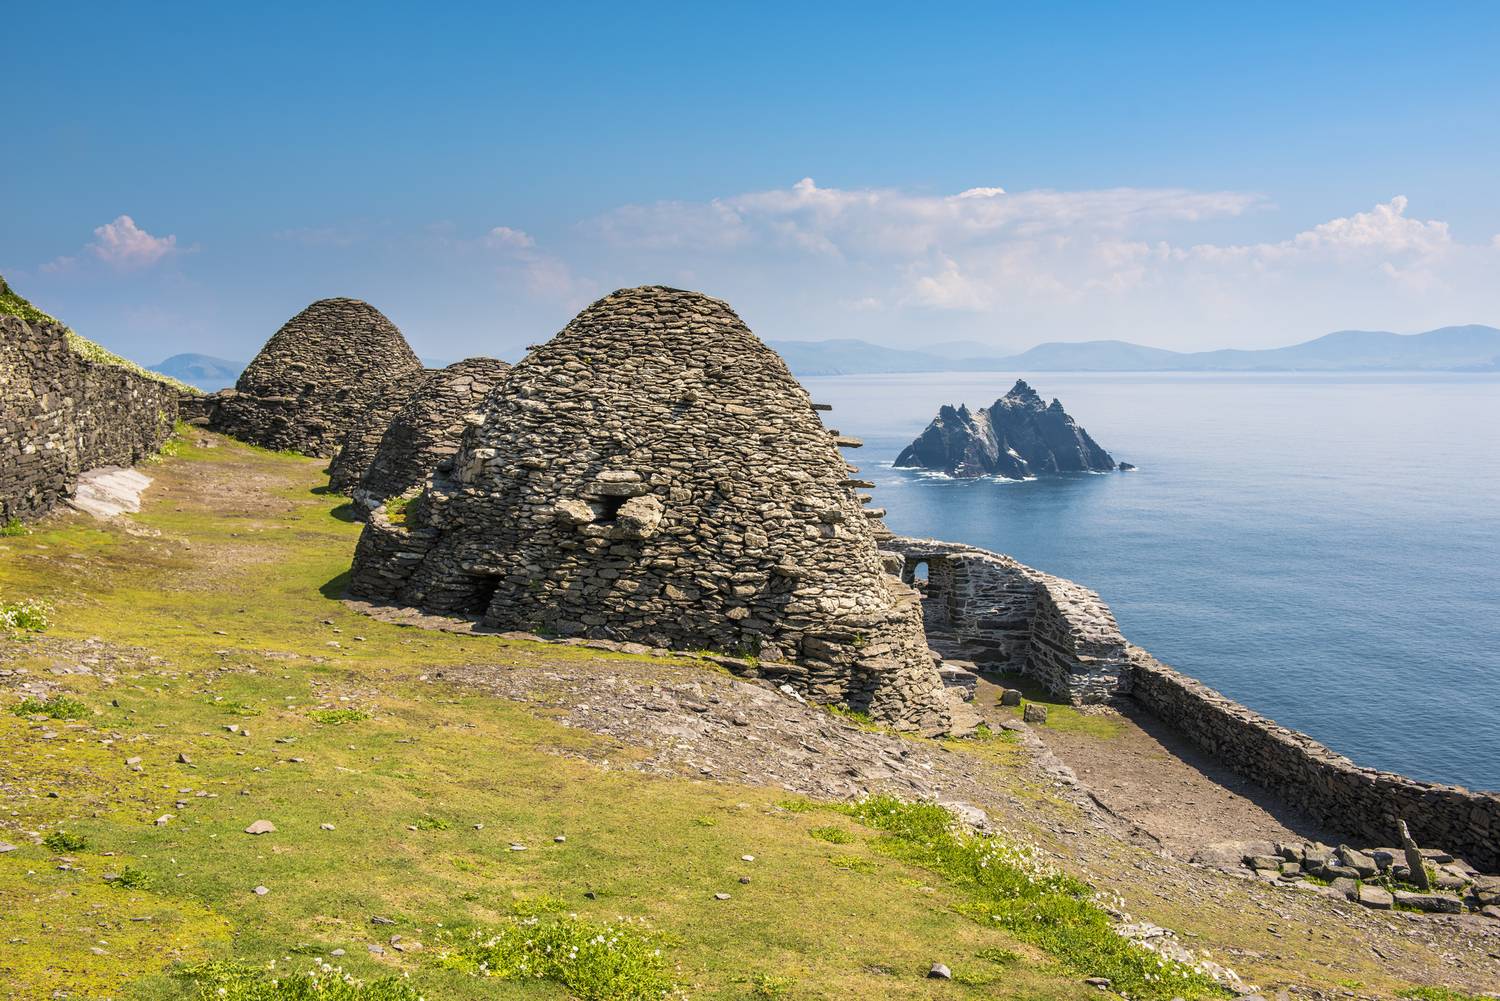 Az írországi Skellig Michael sziklaszigete izgalmas látványvilágú helyszín, nem csoda, hogy a filmesek is felfigyeltek rá. A mozirajongók a Star Wars-epizódokból ismerhetik a szigetet, Az ébredő Erő és Az utolsó Jedik képkockáin is feltűnik.